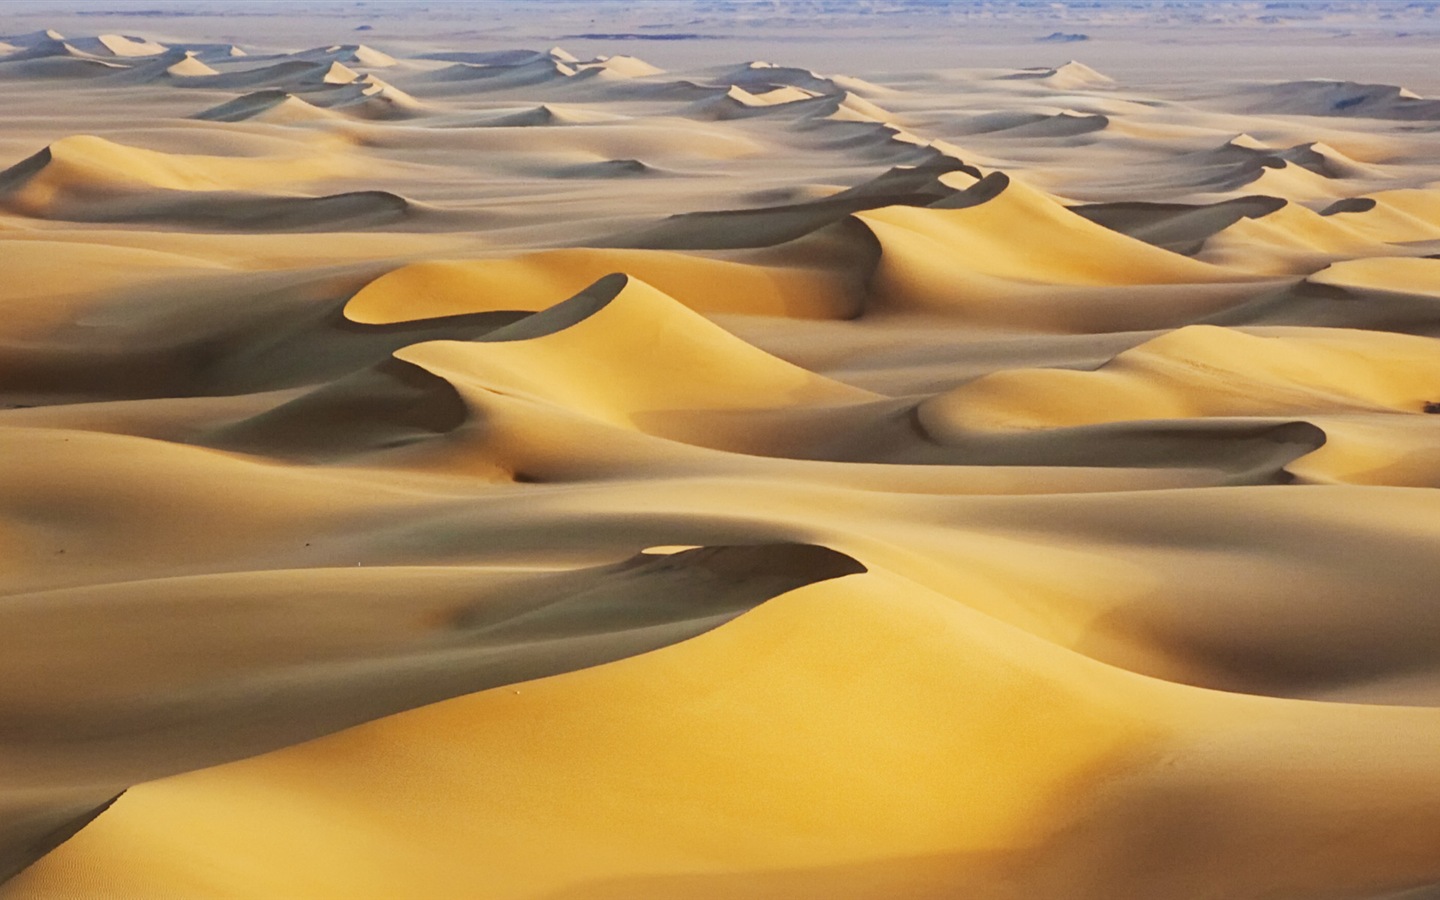 Les déserts chauds et arides, de Windows 8 fonds d'écran widescreen panoramique #4 - 1440x900